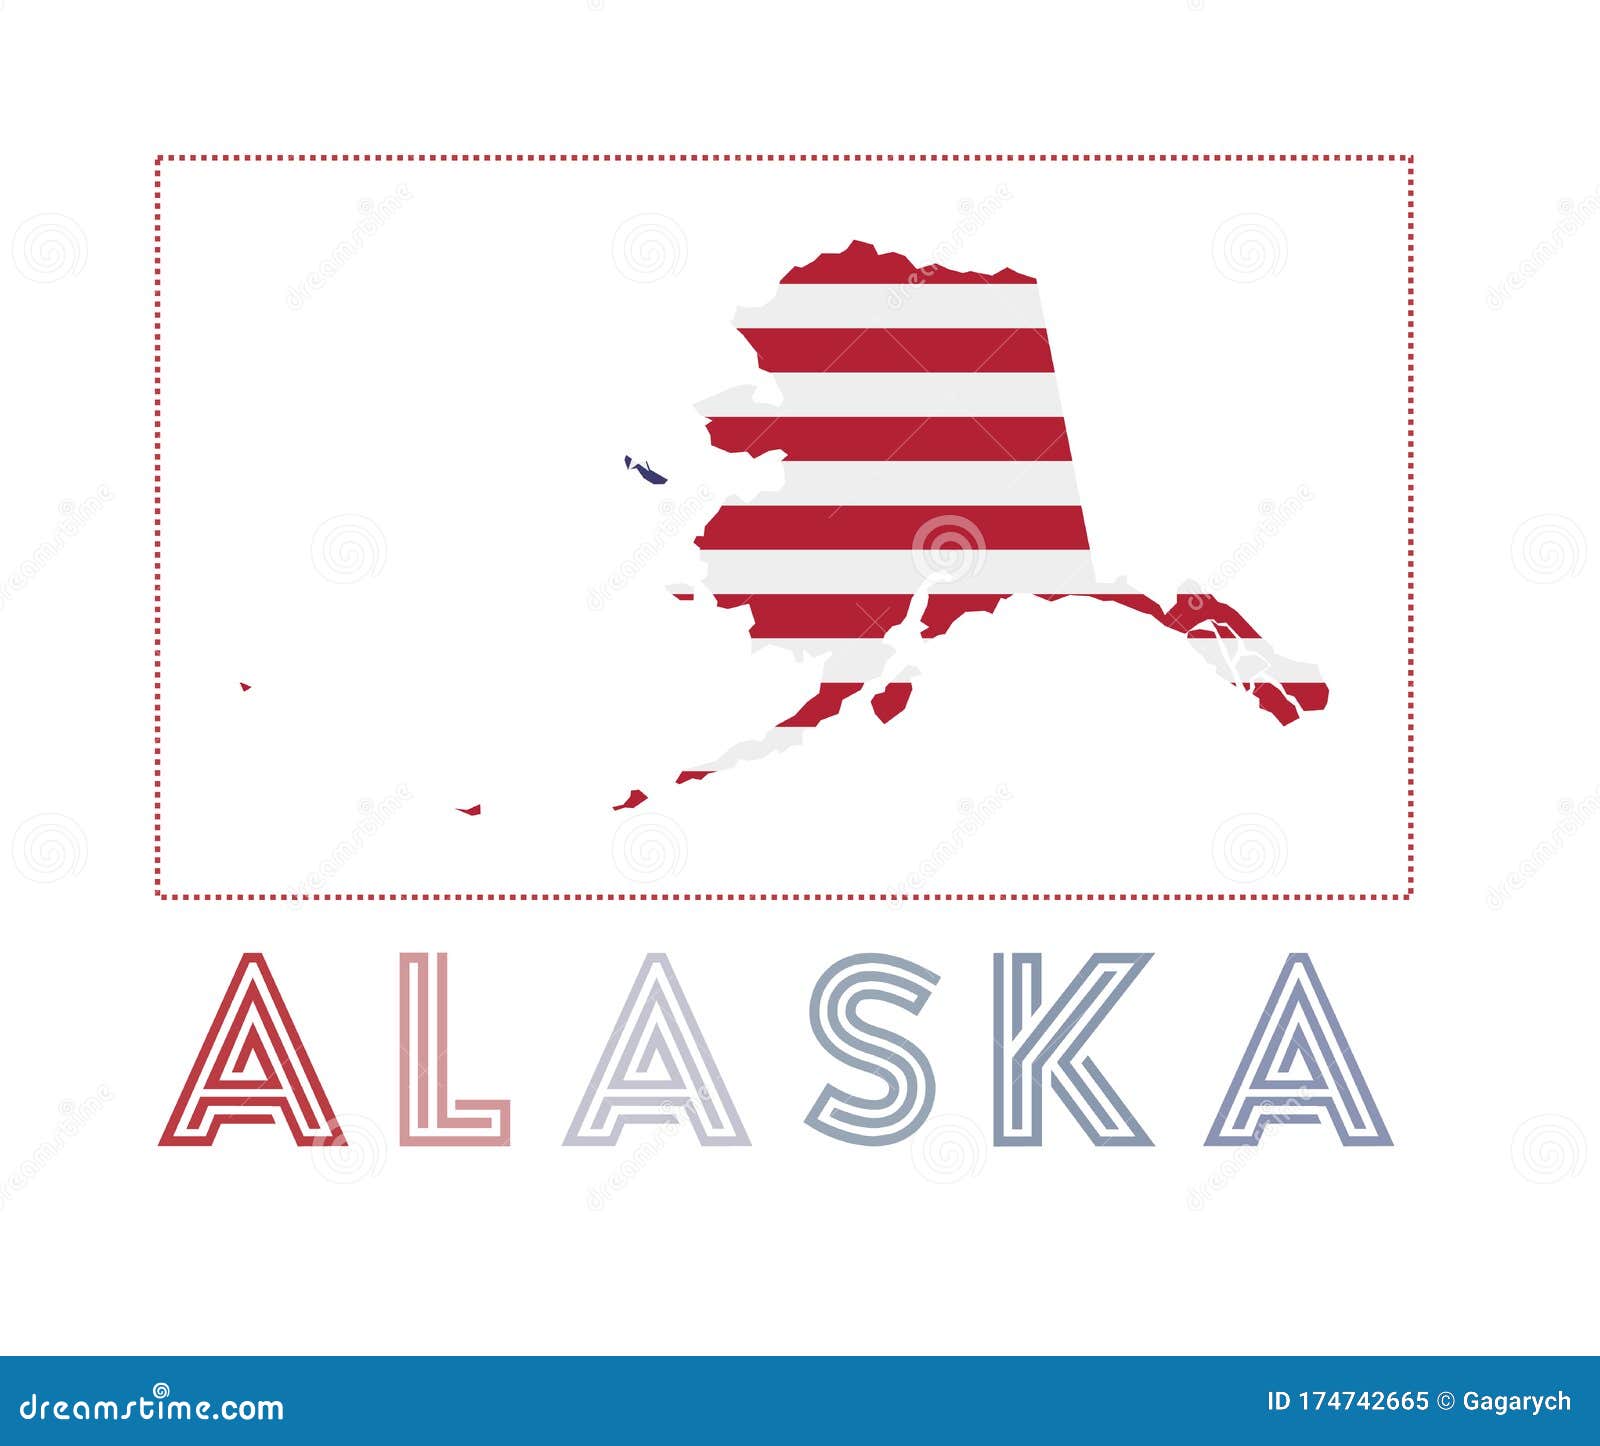 Alaska Logo Map Of Alaska With Us State Name And Stock Vector